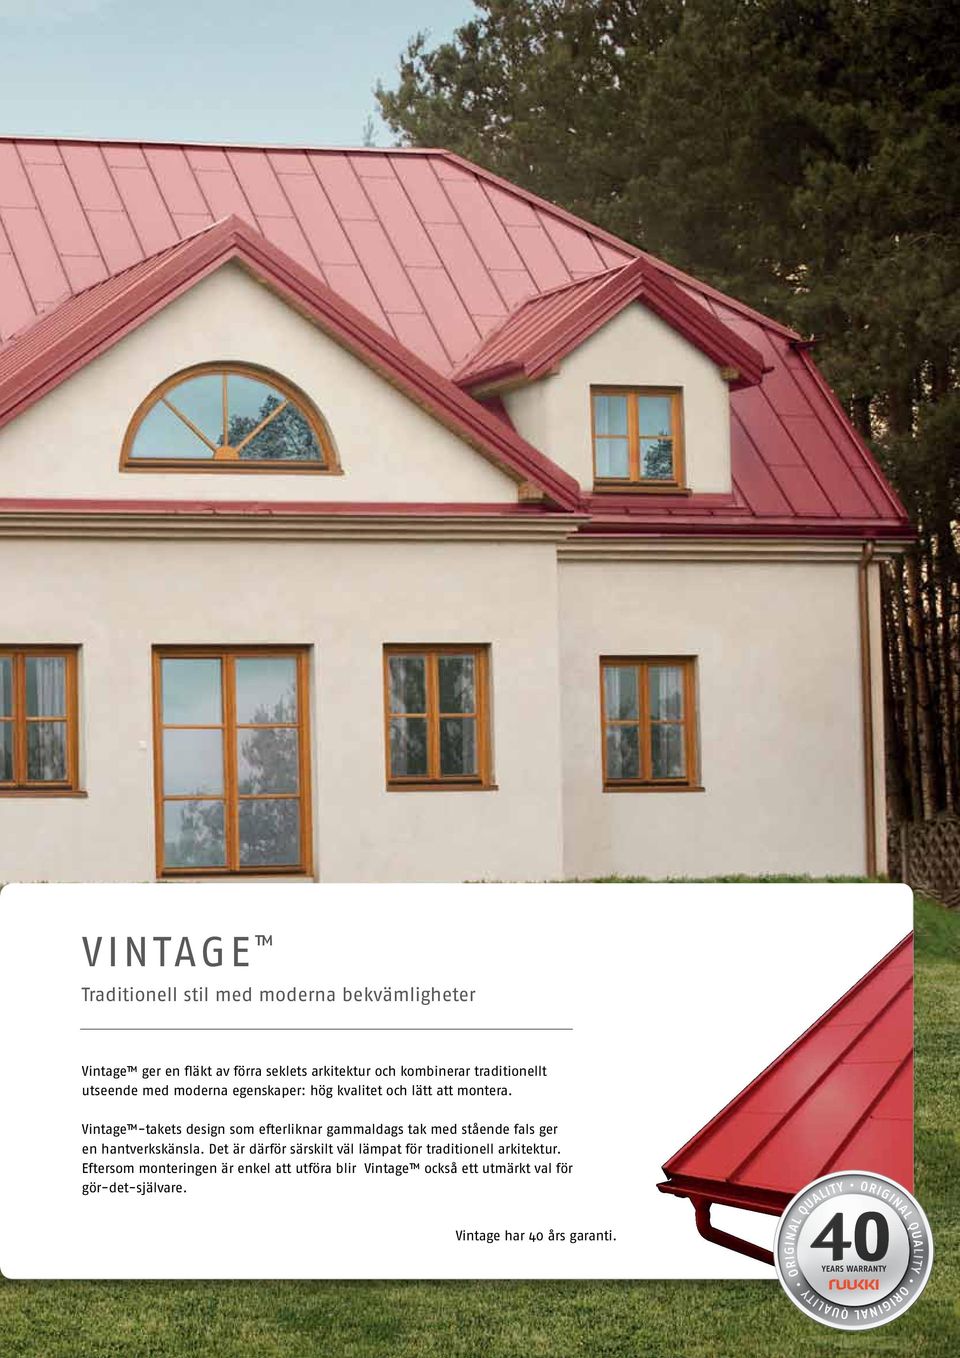 Vintage -takets design som efterliknar gammaldags tak med stående fals ger en hantverkskänsla.